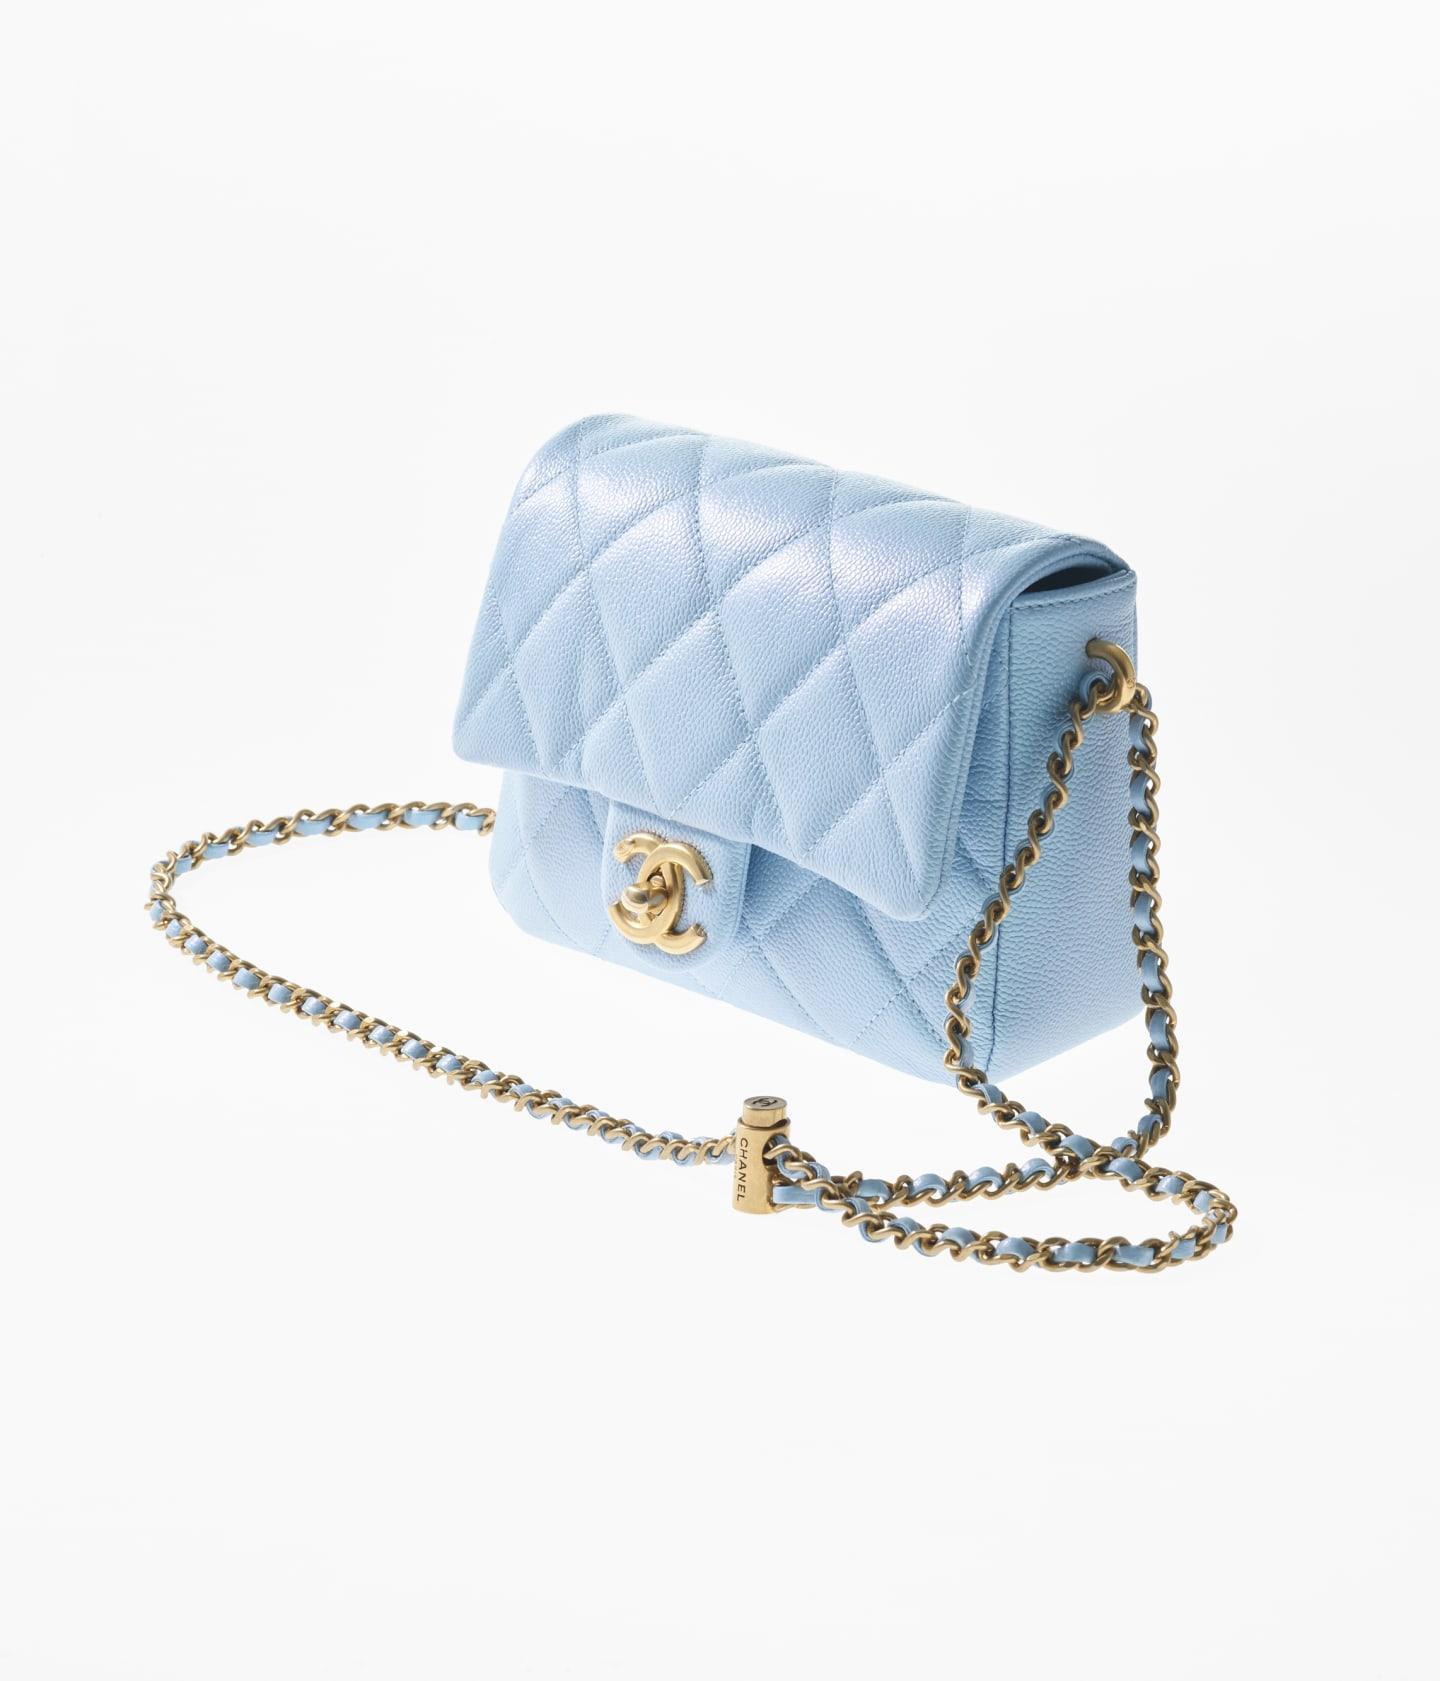 Chanel Classic Flap Medium Bag WIMB - What Fits Inside 